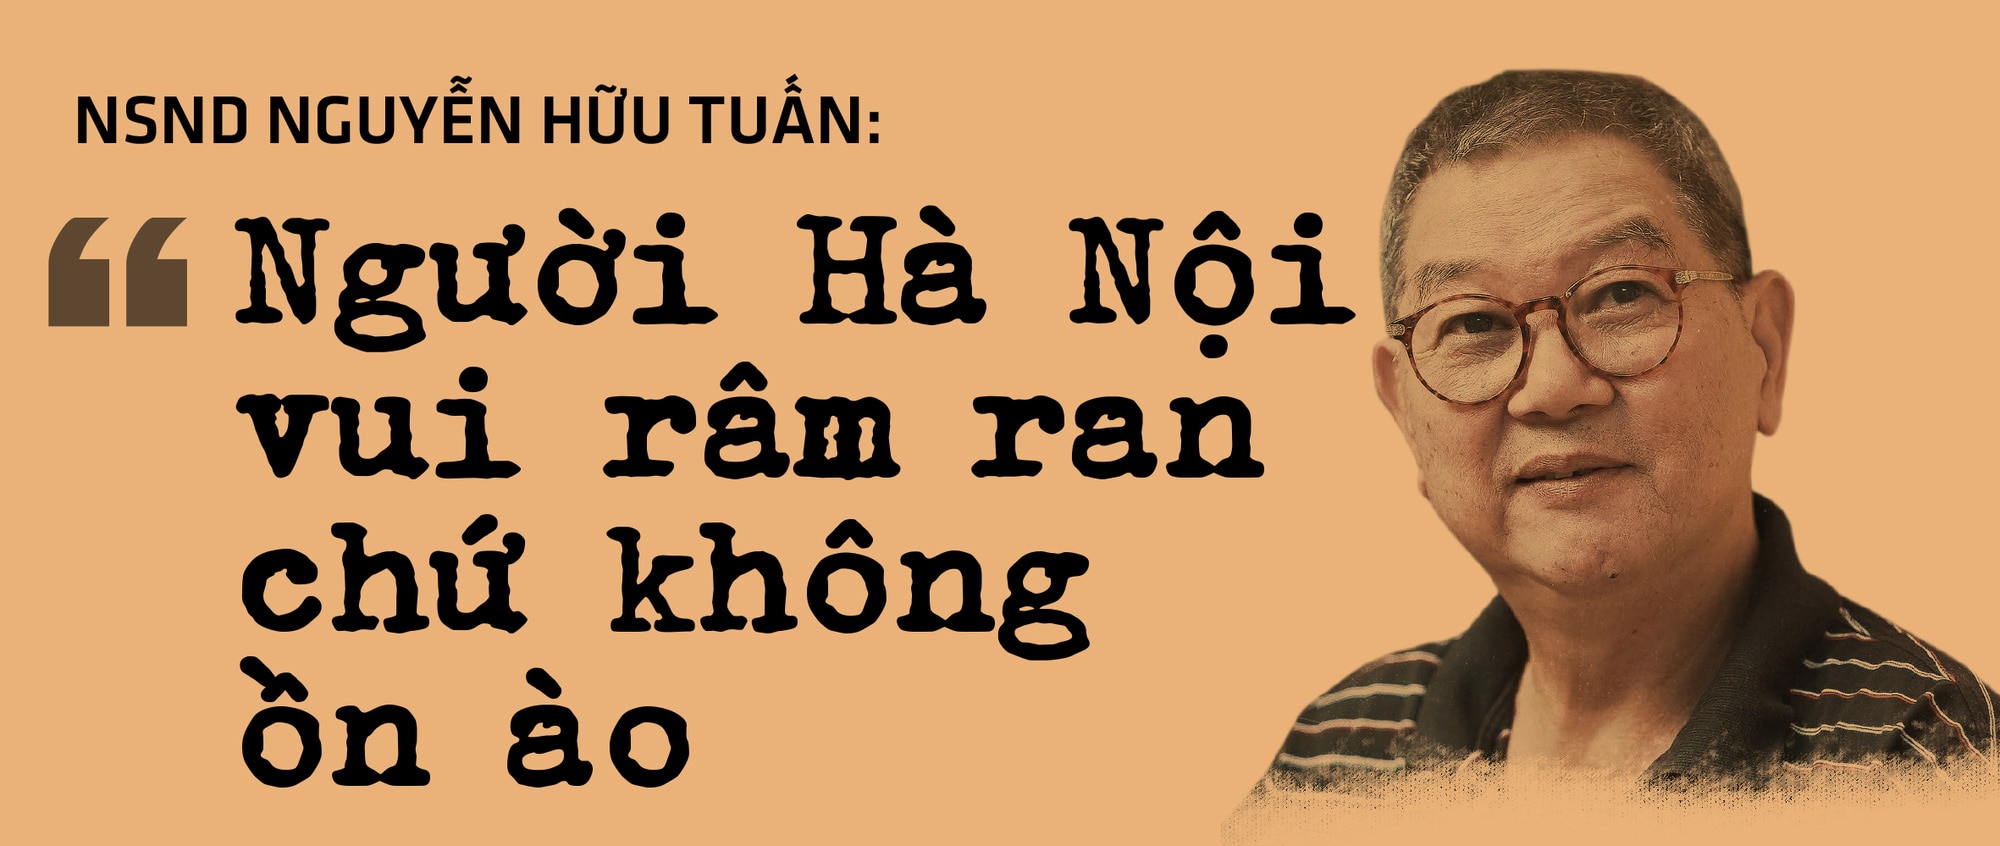 Ngày Sài Gòn cầm tay Hà Nội... - Ảnh 6.